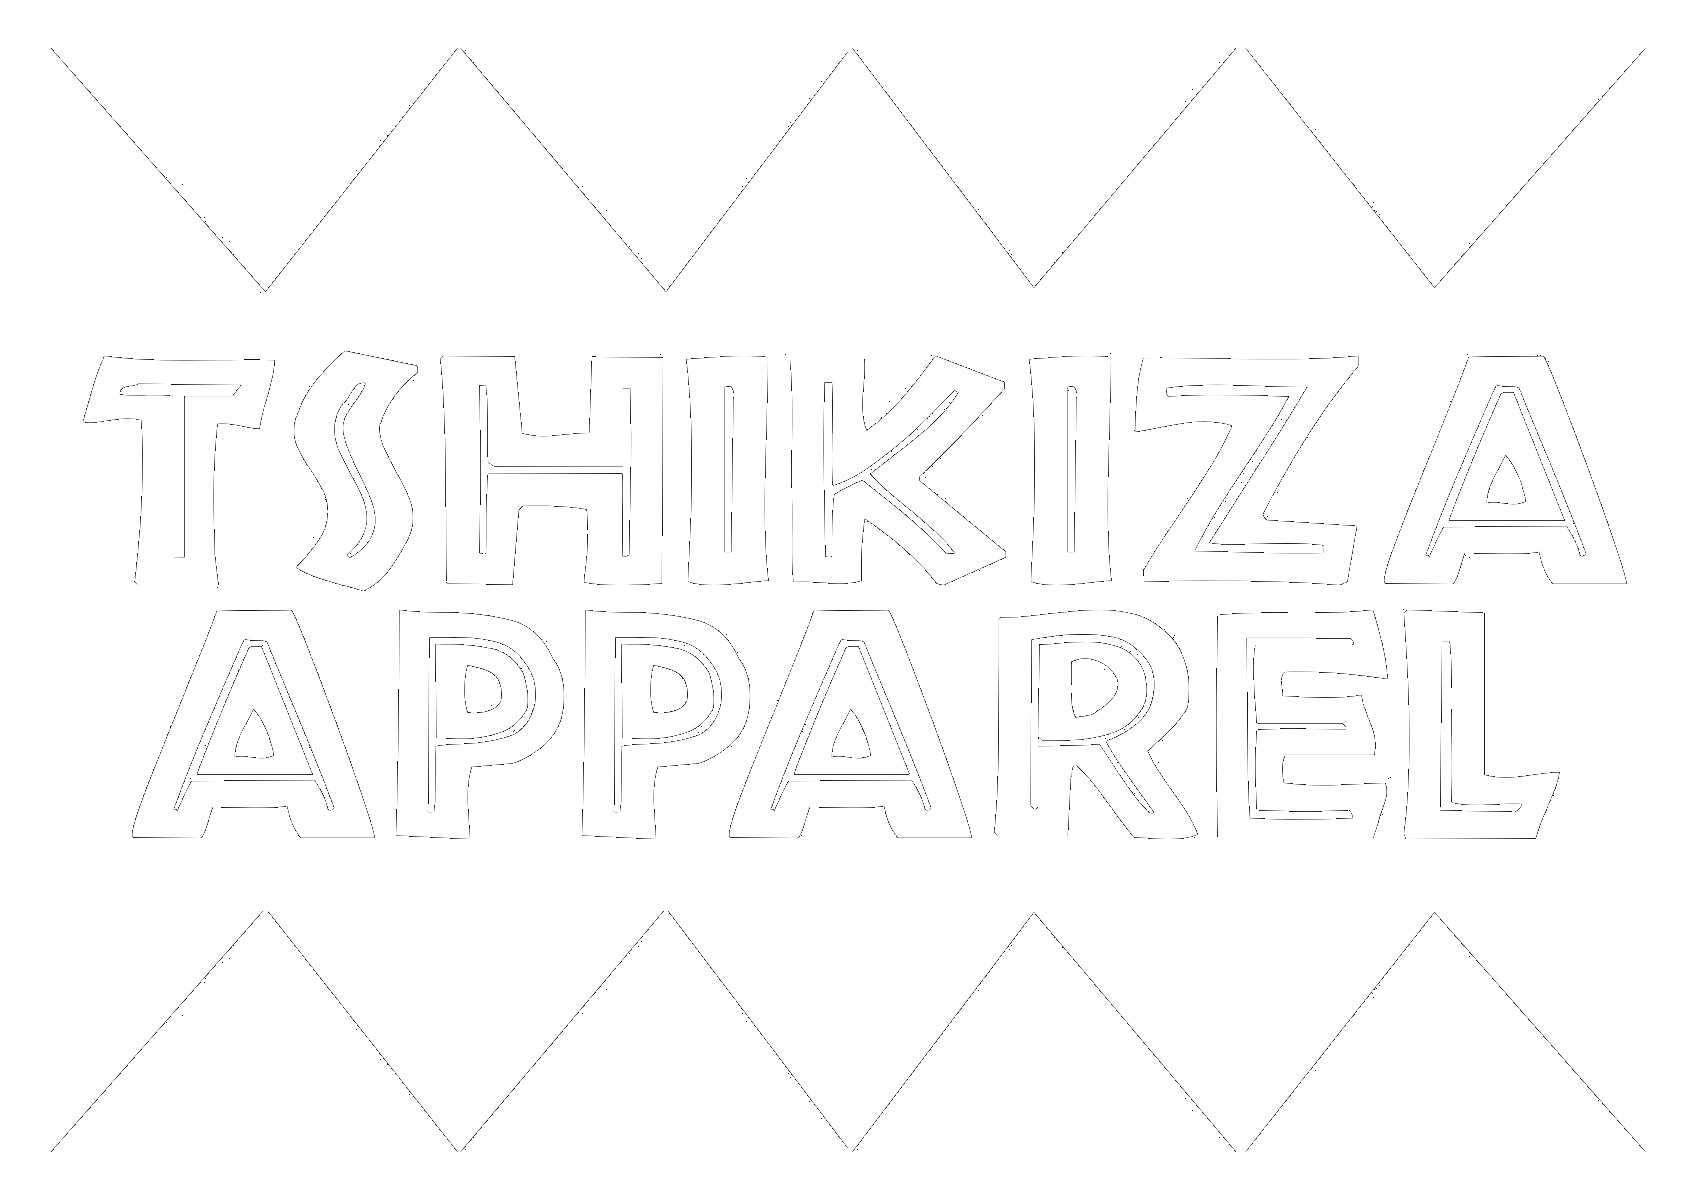 Tshikiza Apparel